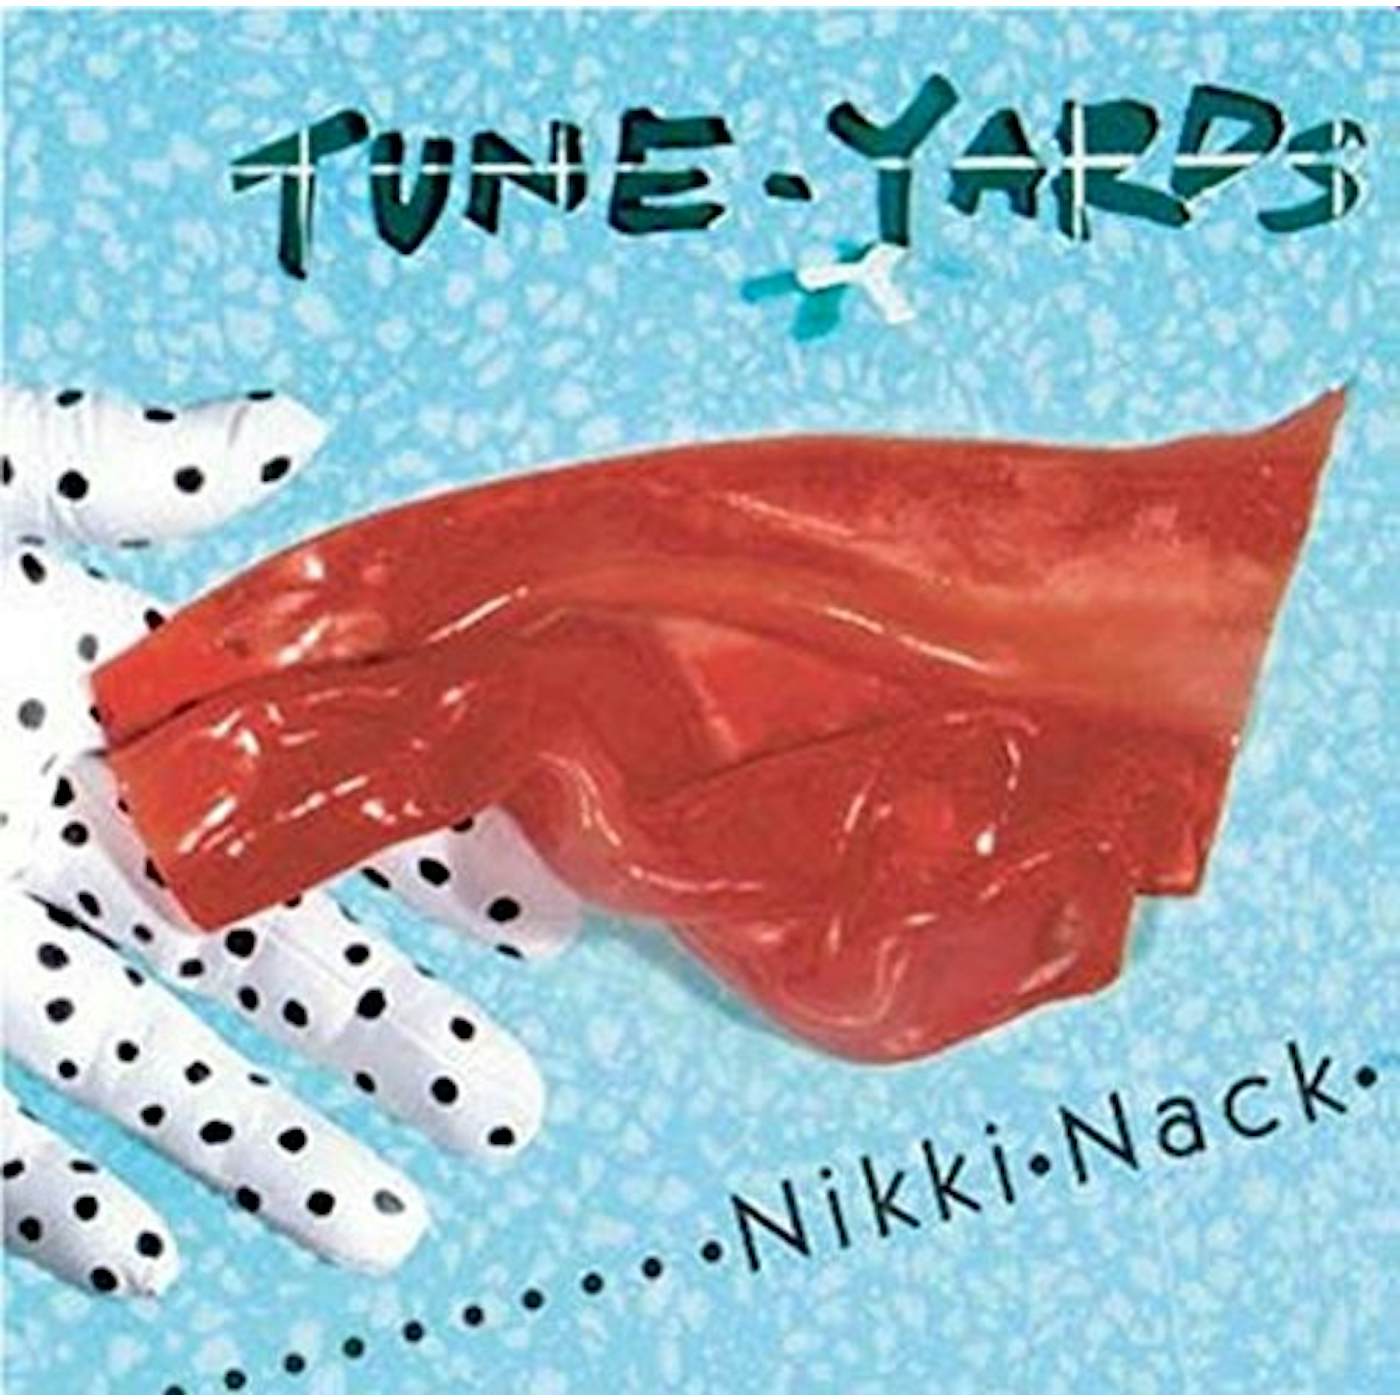 Tune-Yards NIKKI NACK (RED VINYL) (I) Vinyl Record